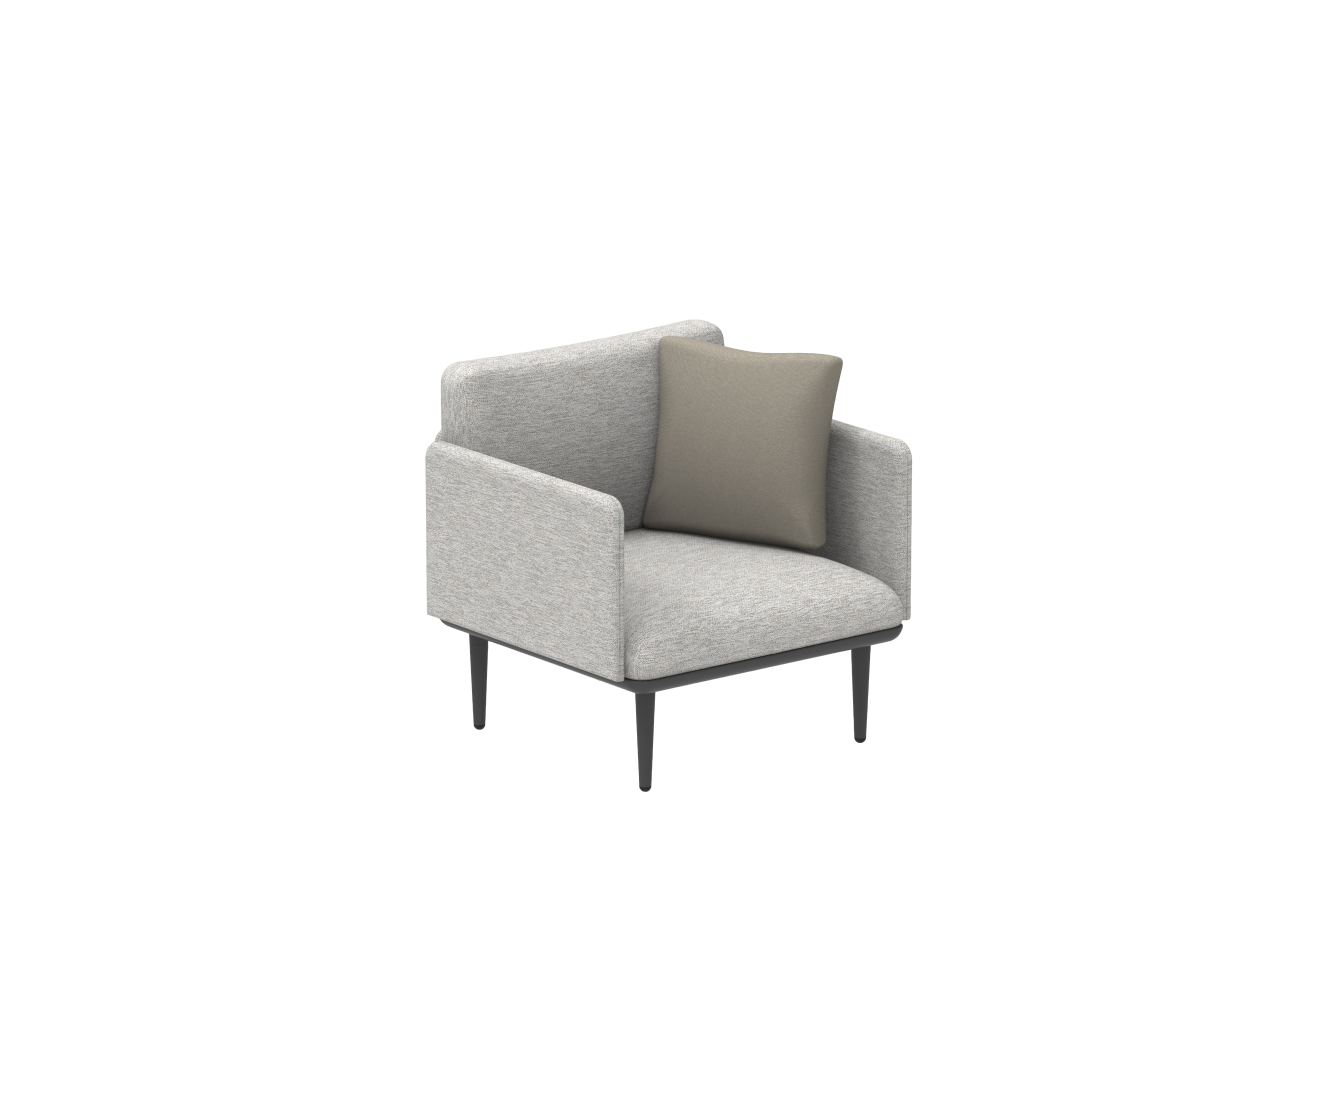 Styletto Lounge Armchair | Royal Botania